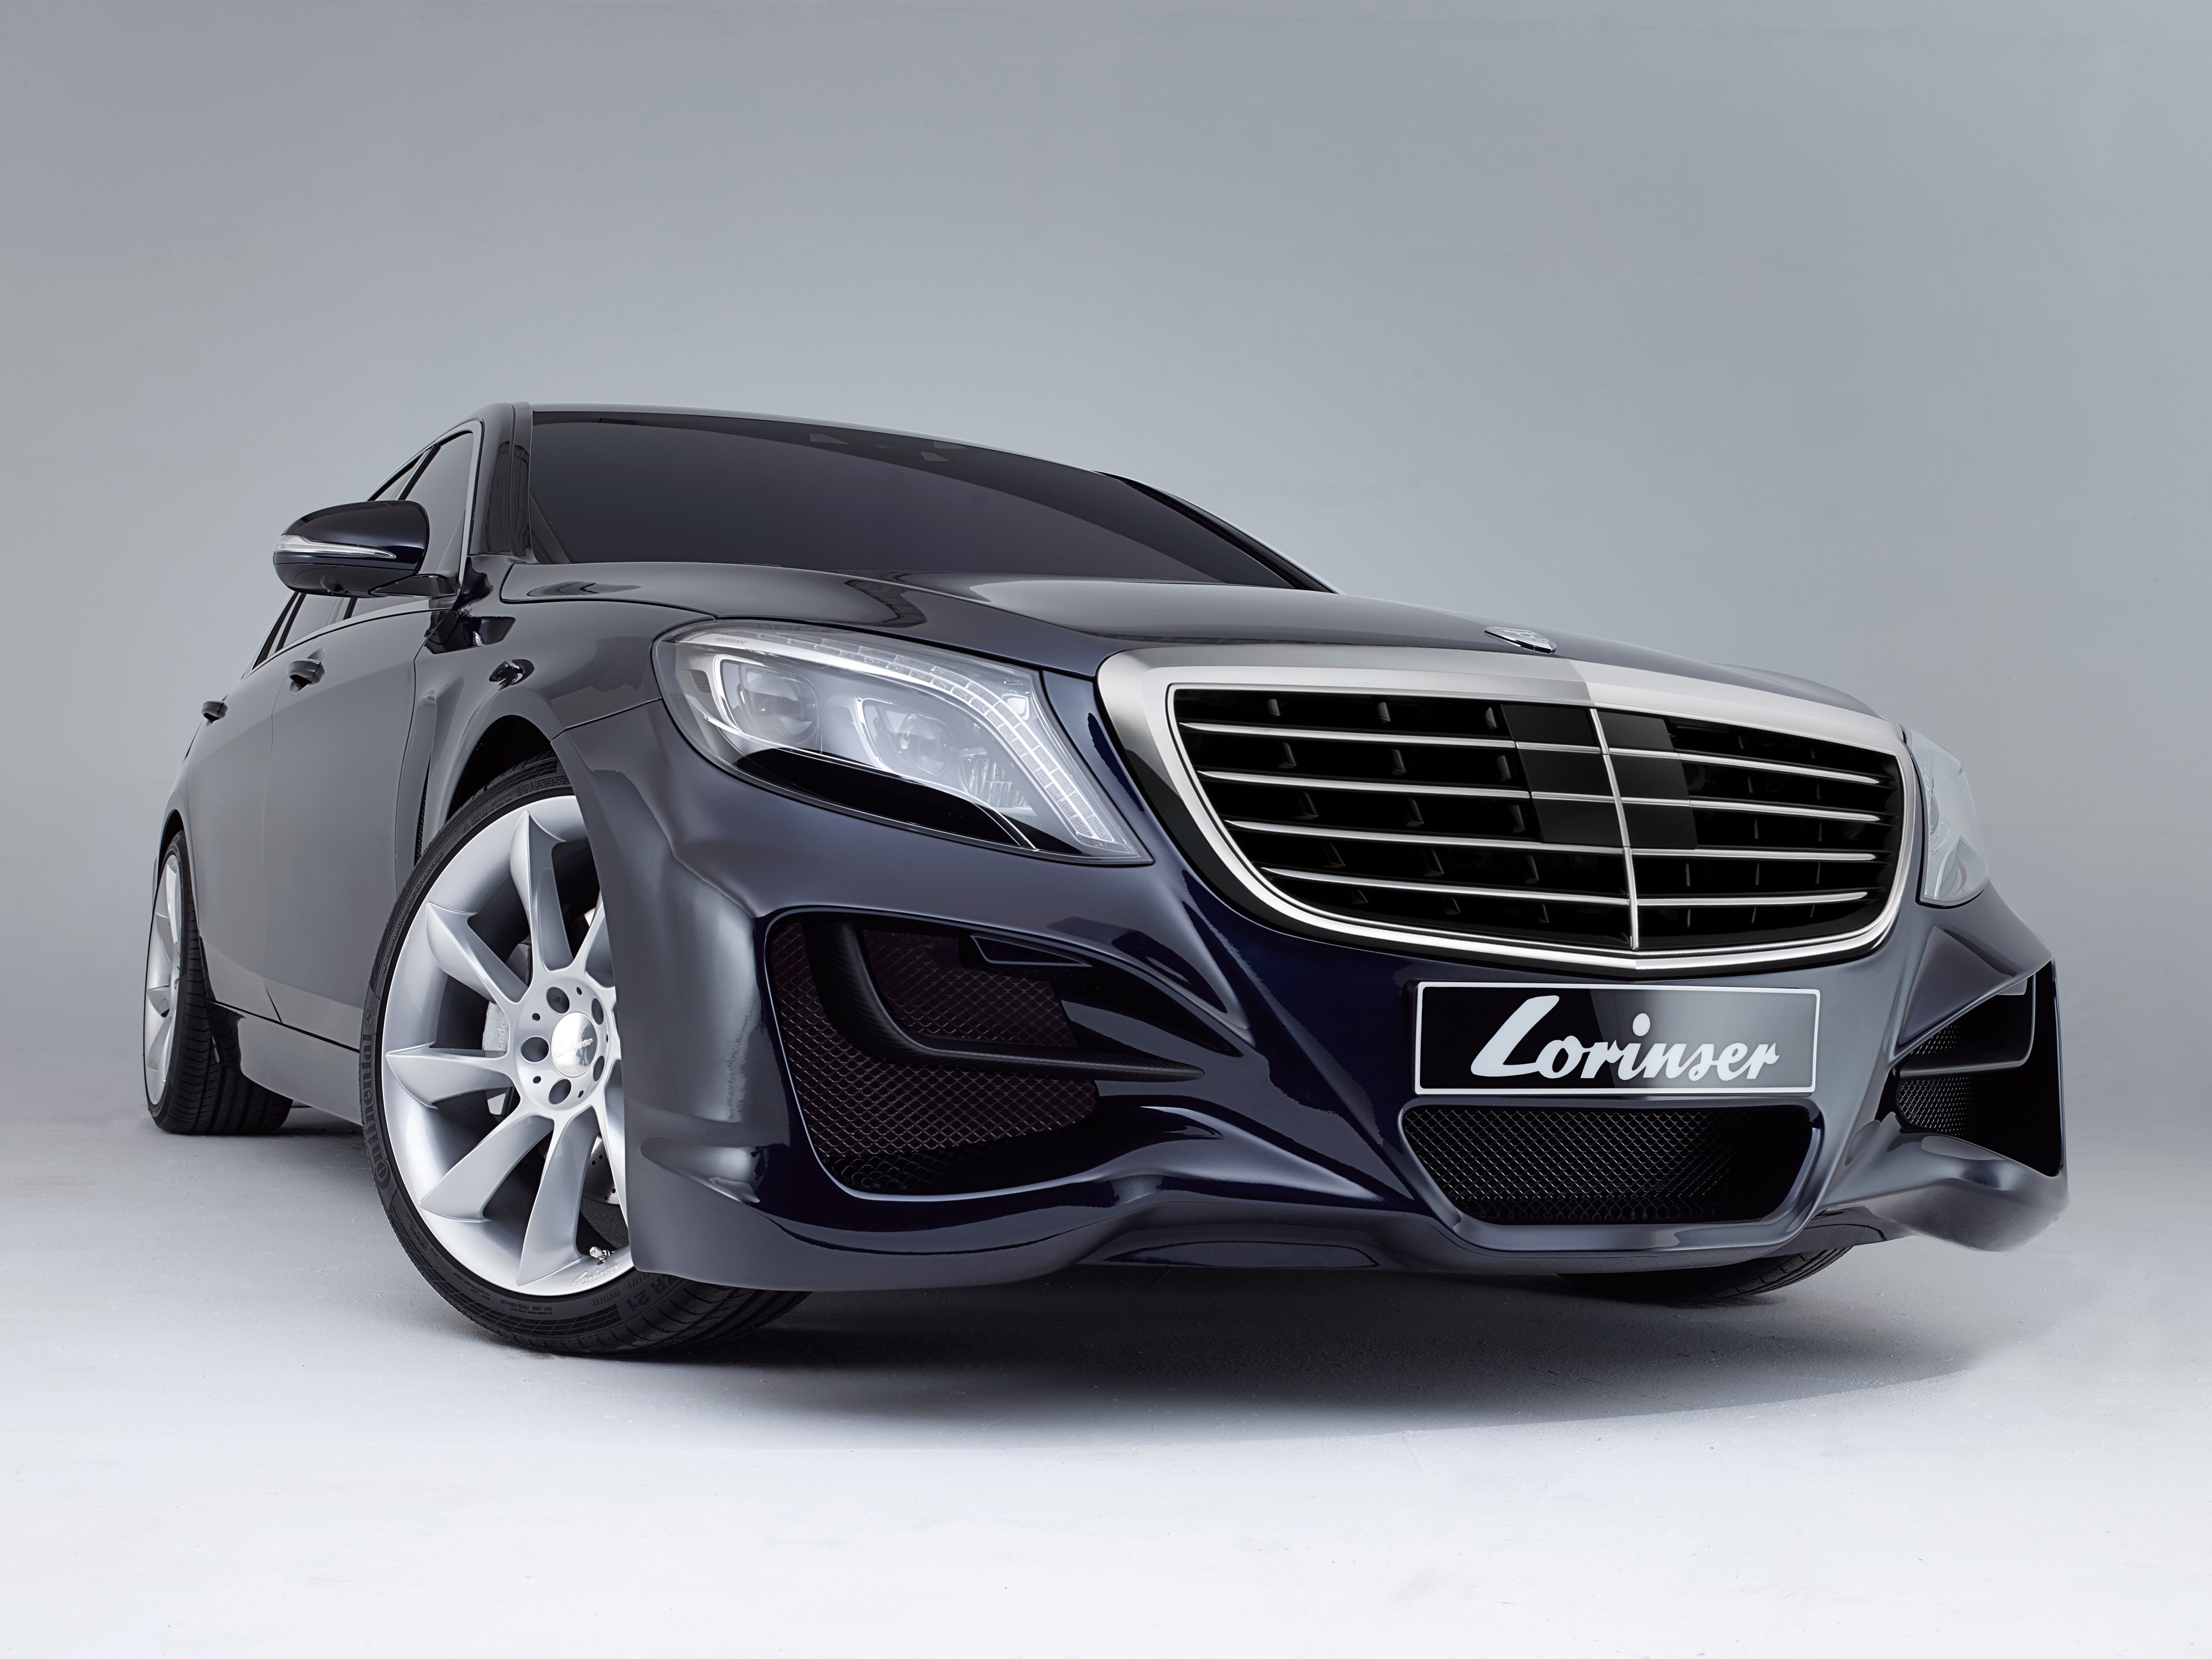 2013, Lorinser, Mercedes, Benz, S klasse, W222, Tuning Wallpaper